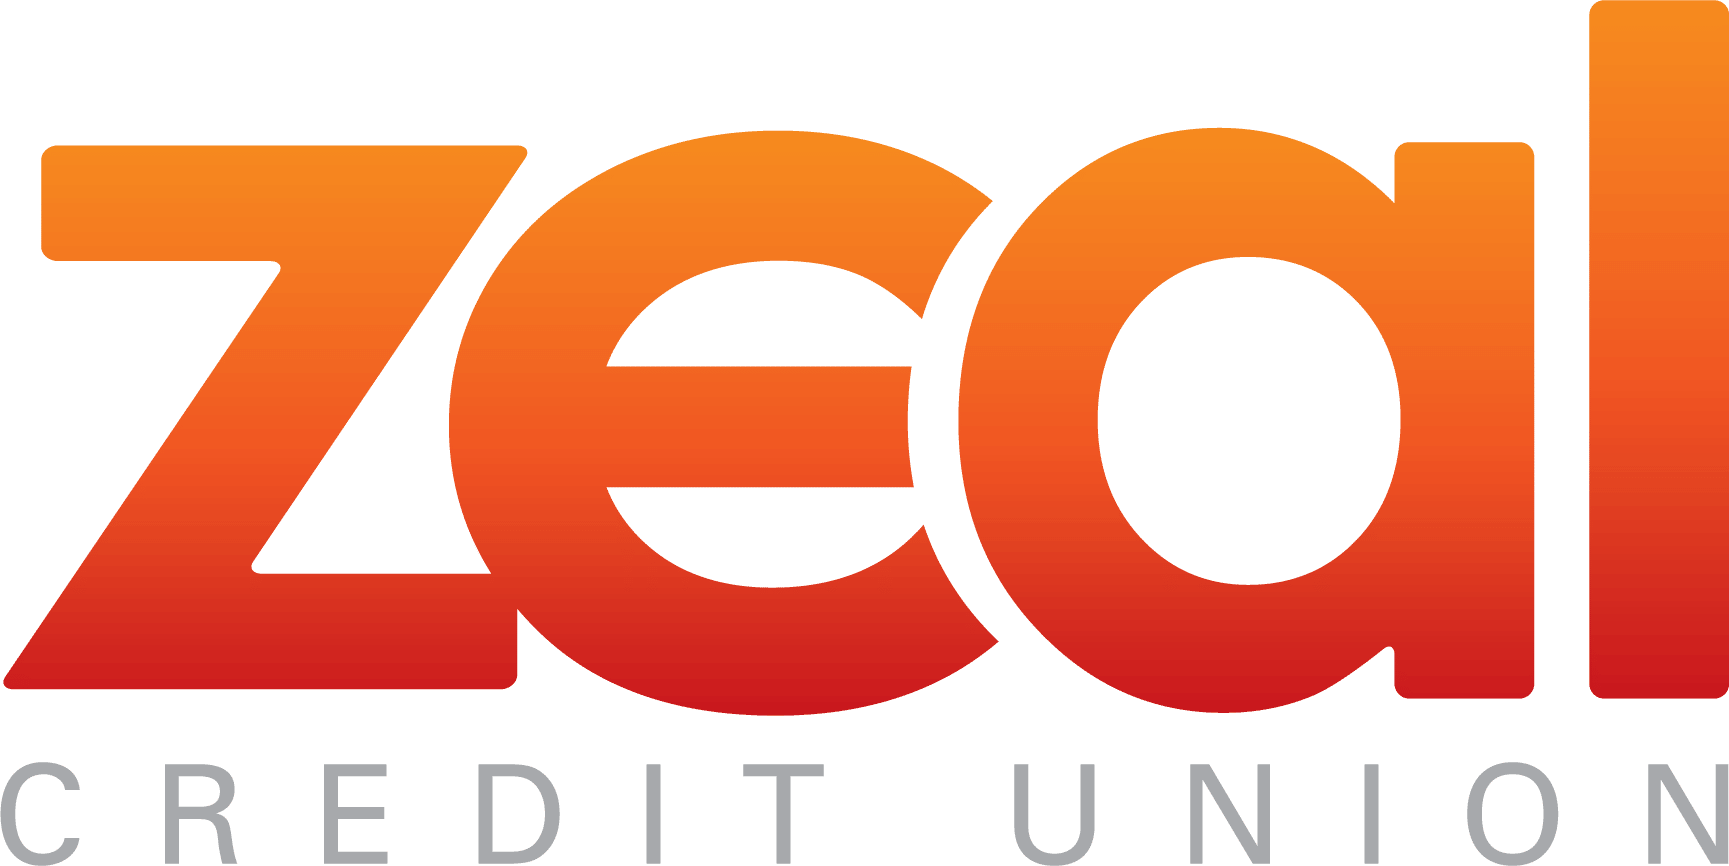 Zeal Credit Union 36-months Jumbo CD